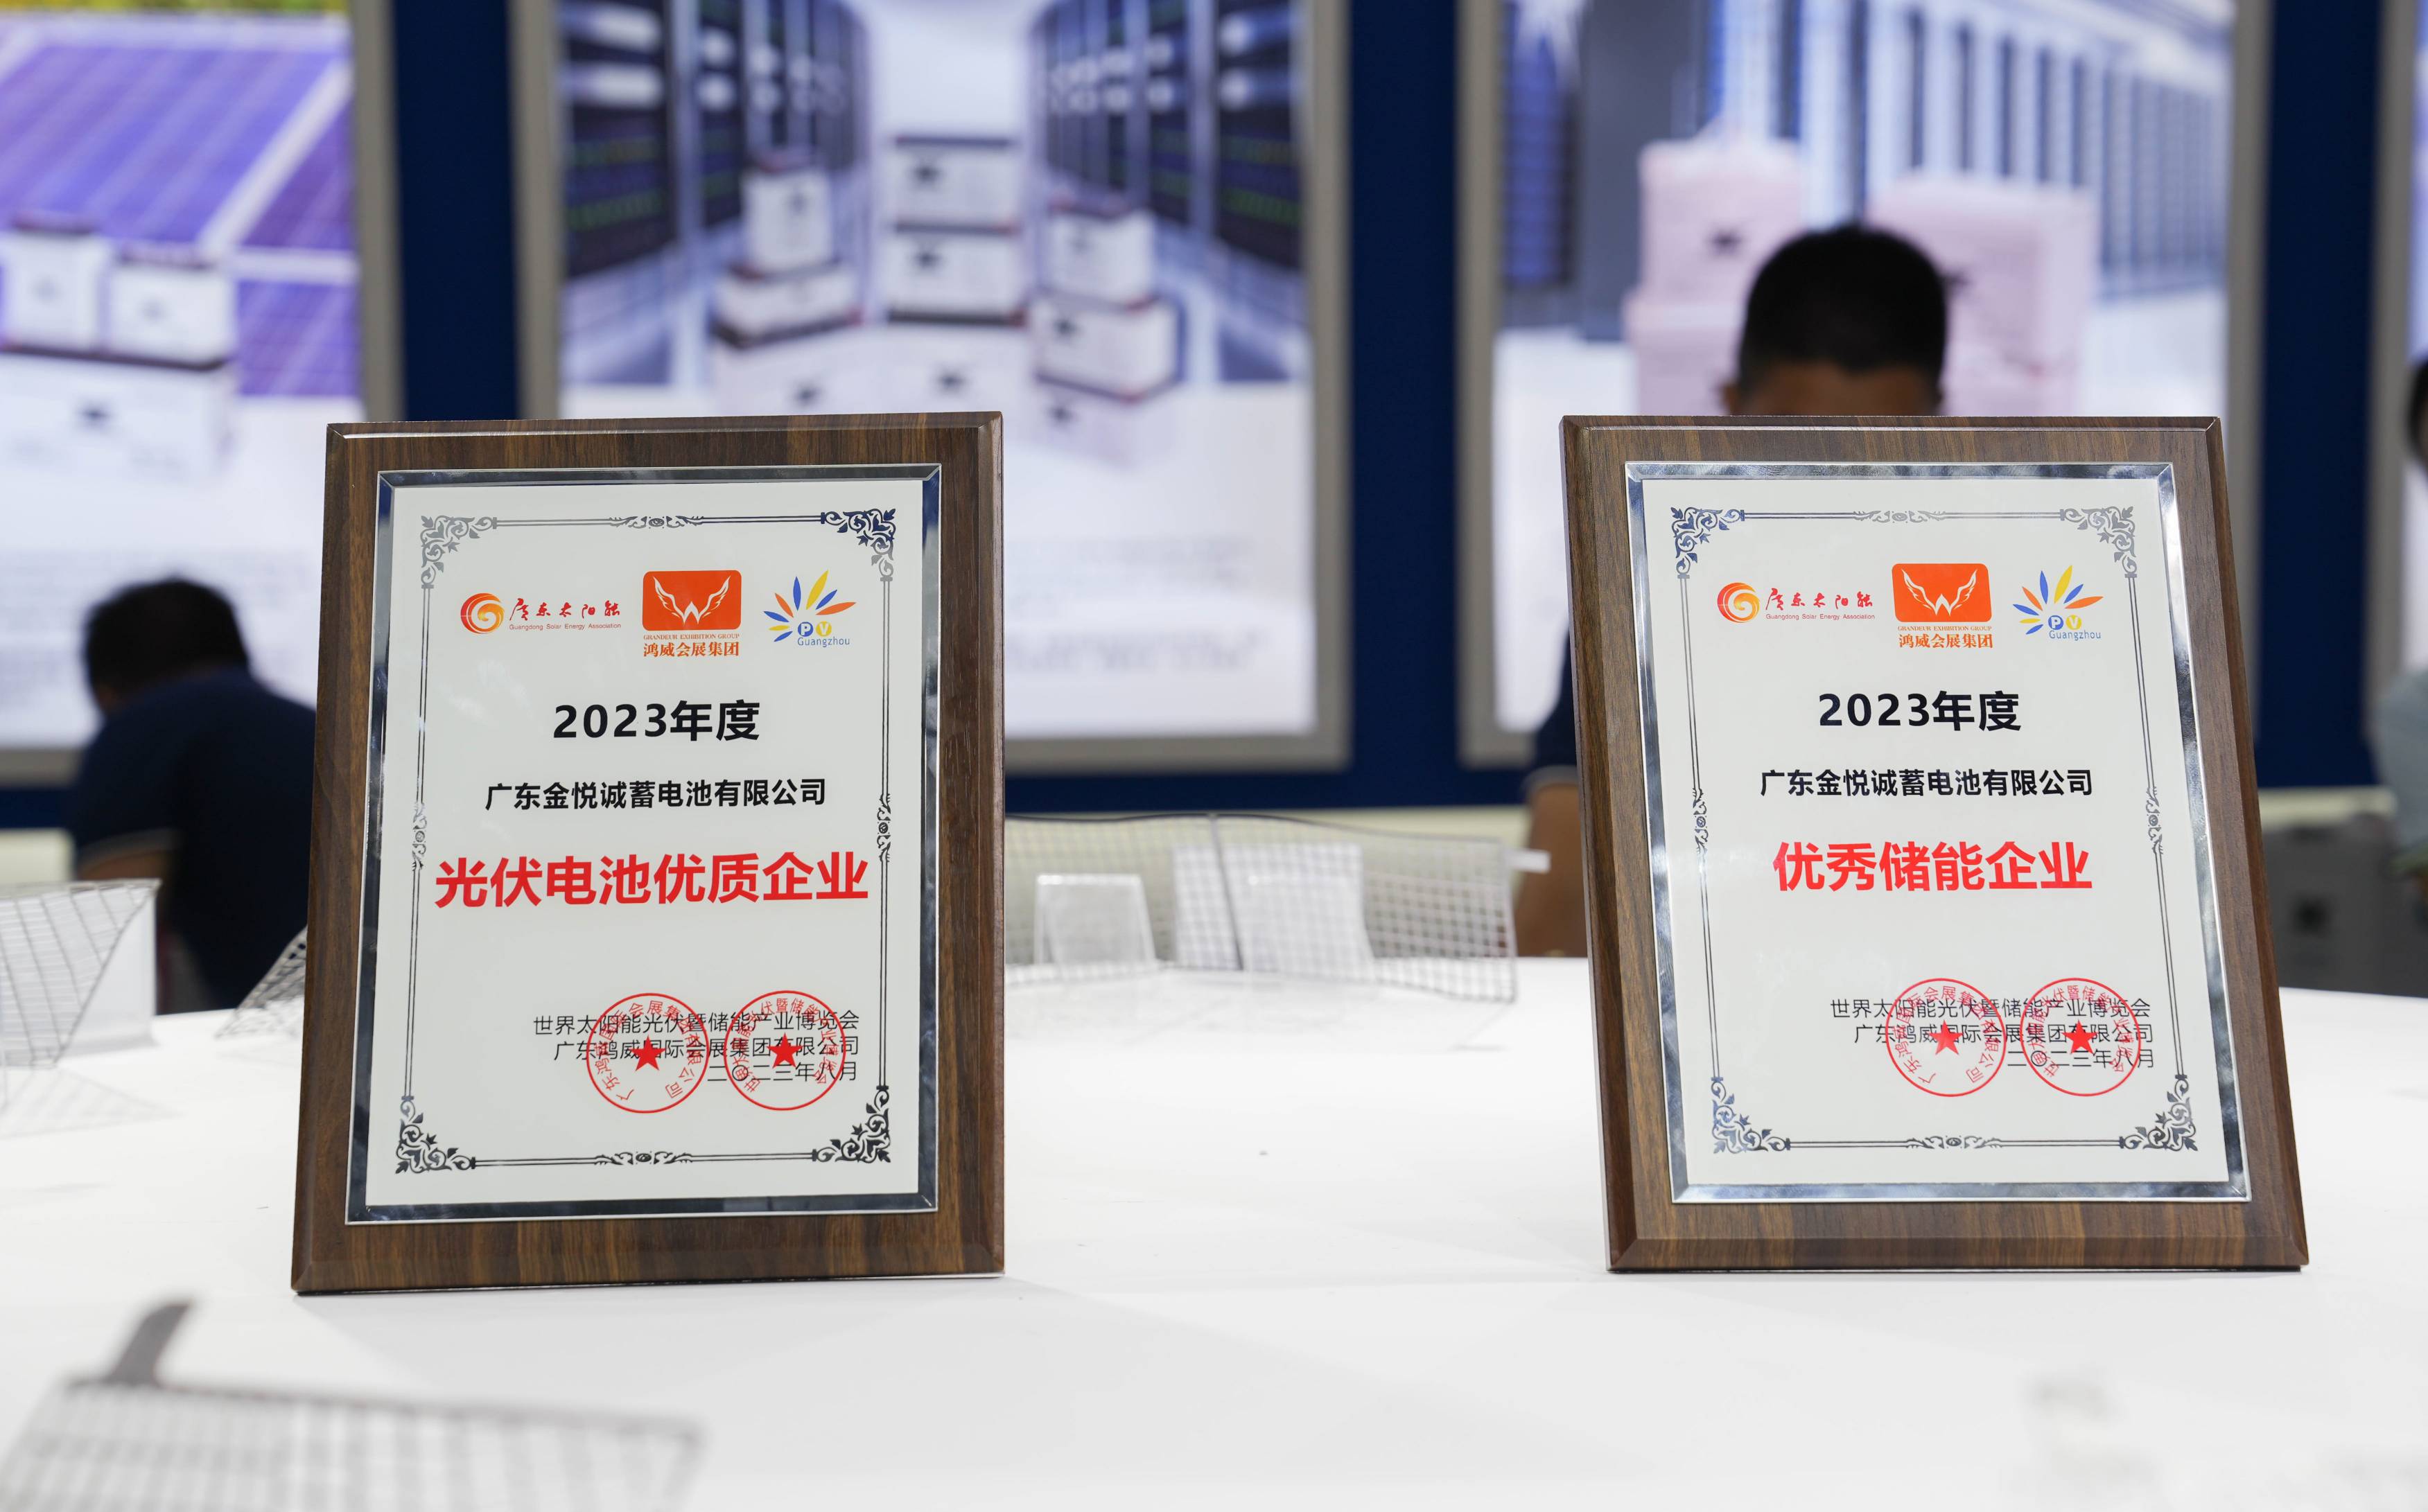 喜報 | 金悅誠榮獲“2023優秀儲能企業”與“2023光伏電池優質企業”兩大獎項